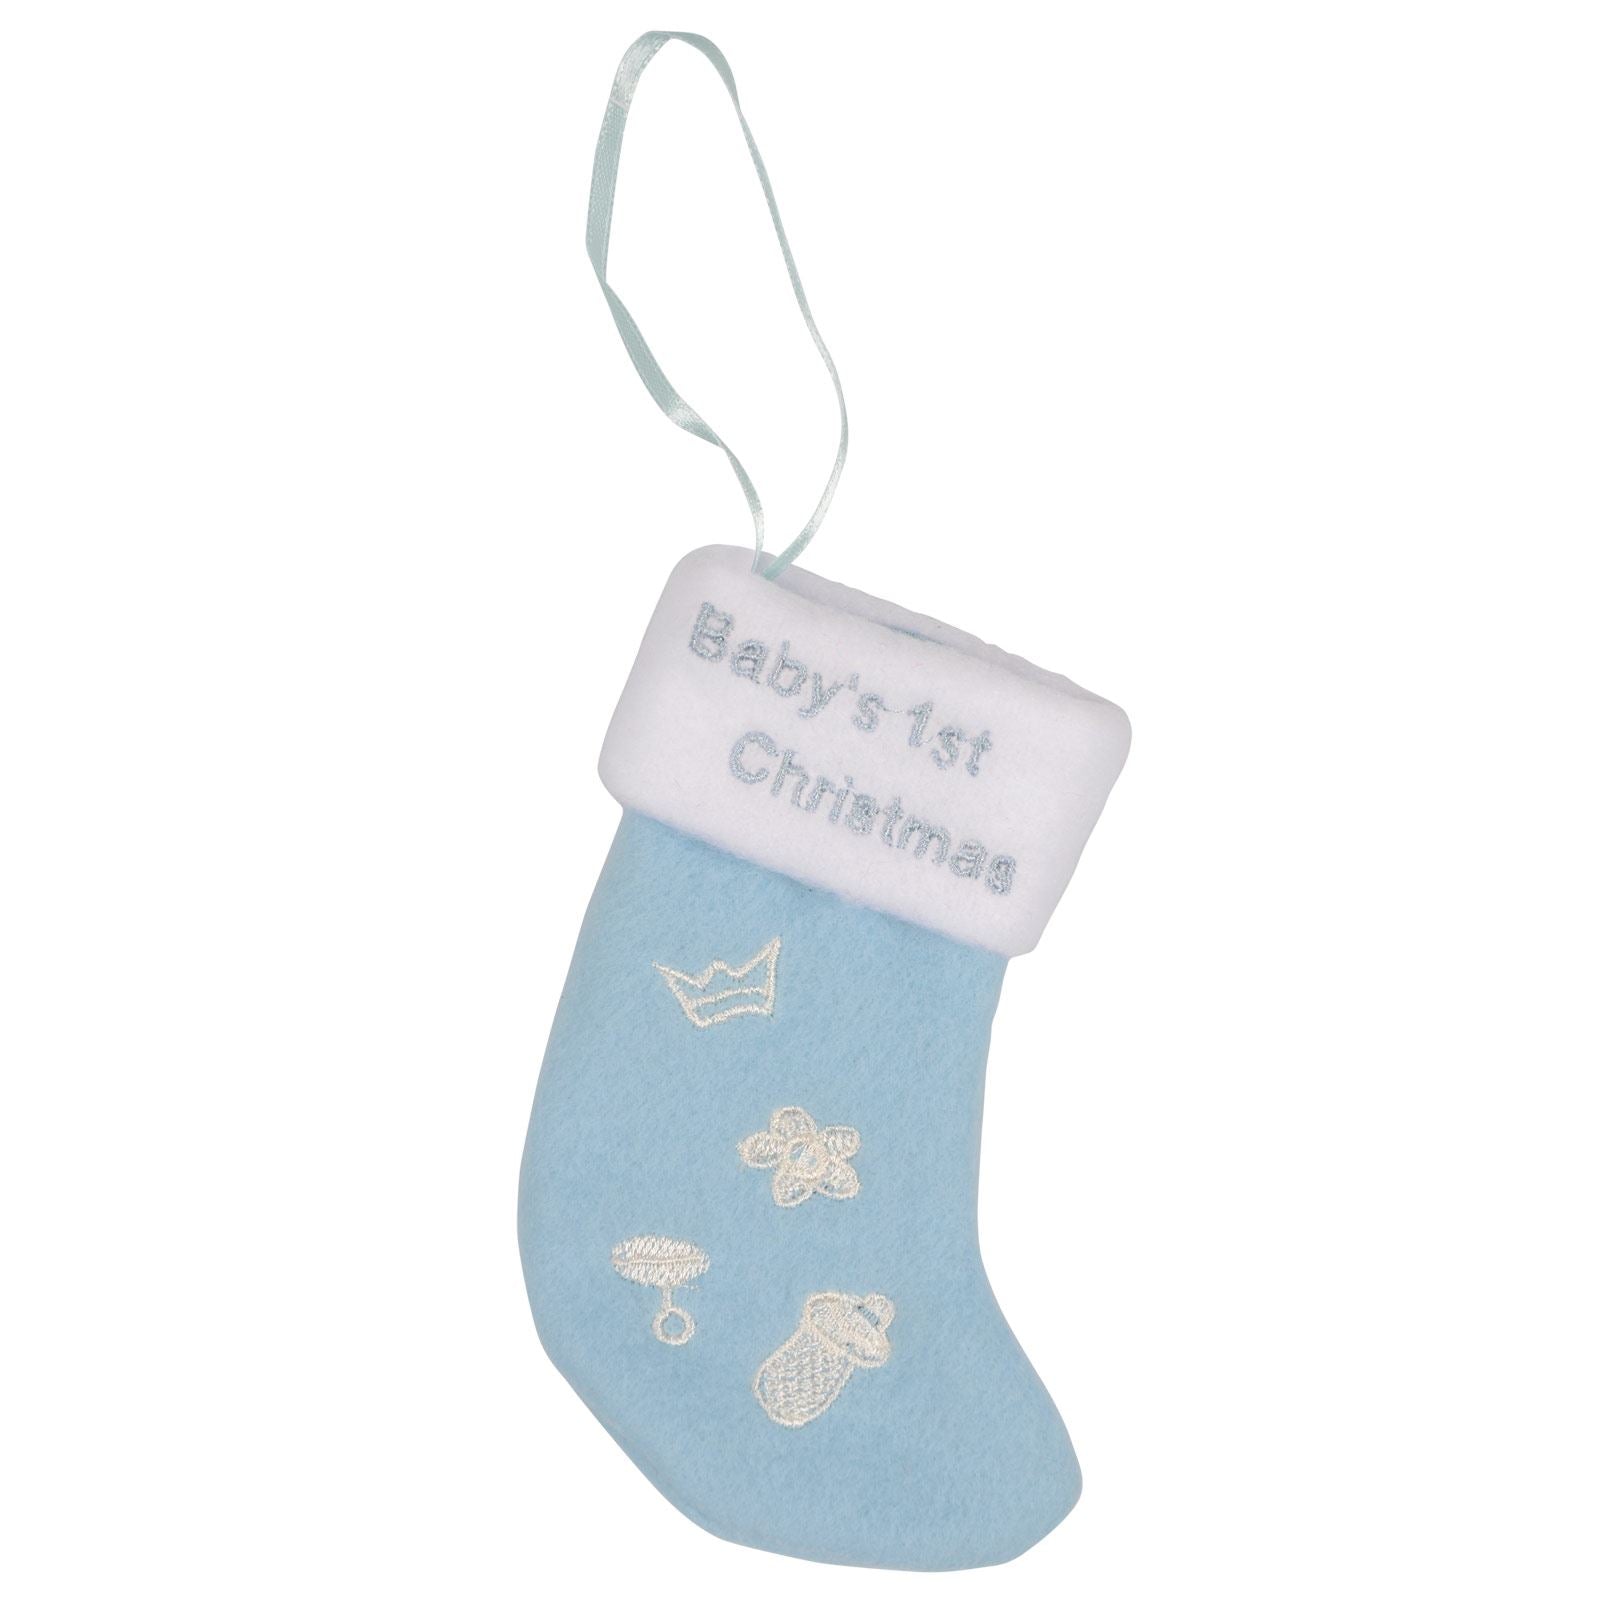 Mr Crimbo Baby 1st Christmas Stocking 5" Tree Decoration - MrCrimbo.co.uk -XS1768 - Blue -baby